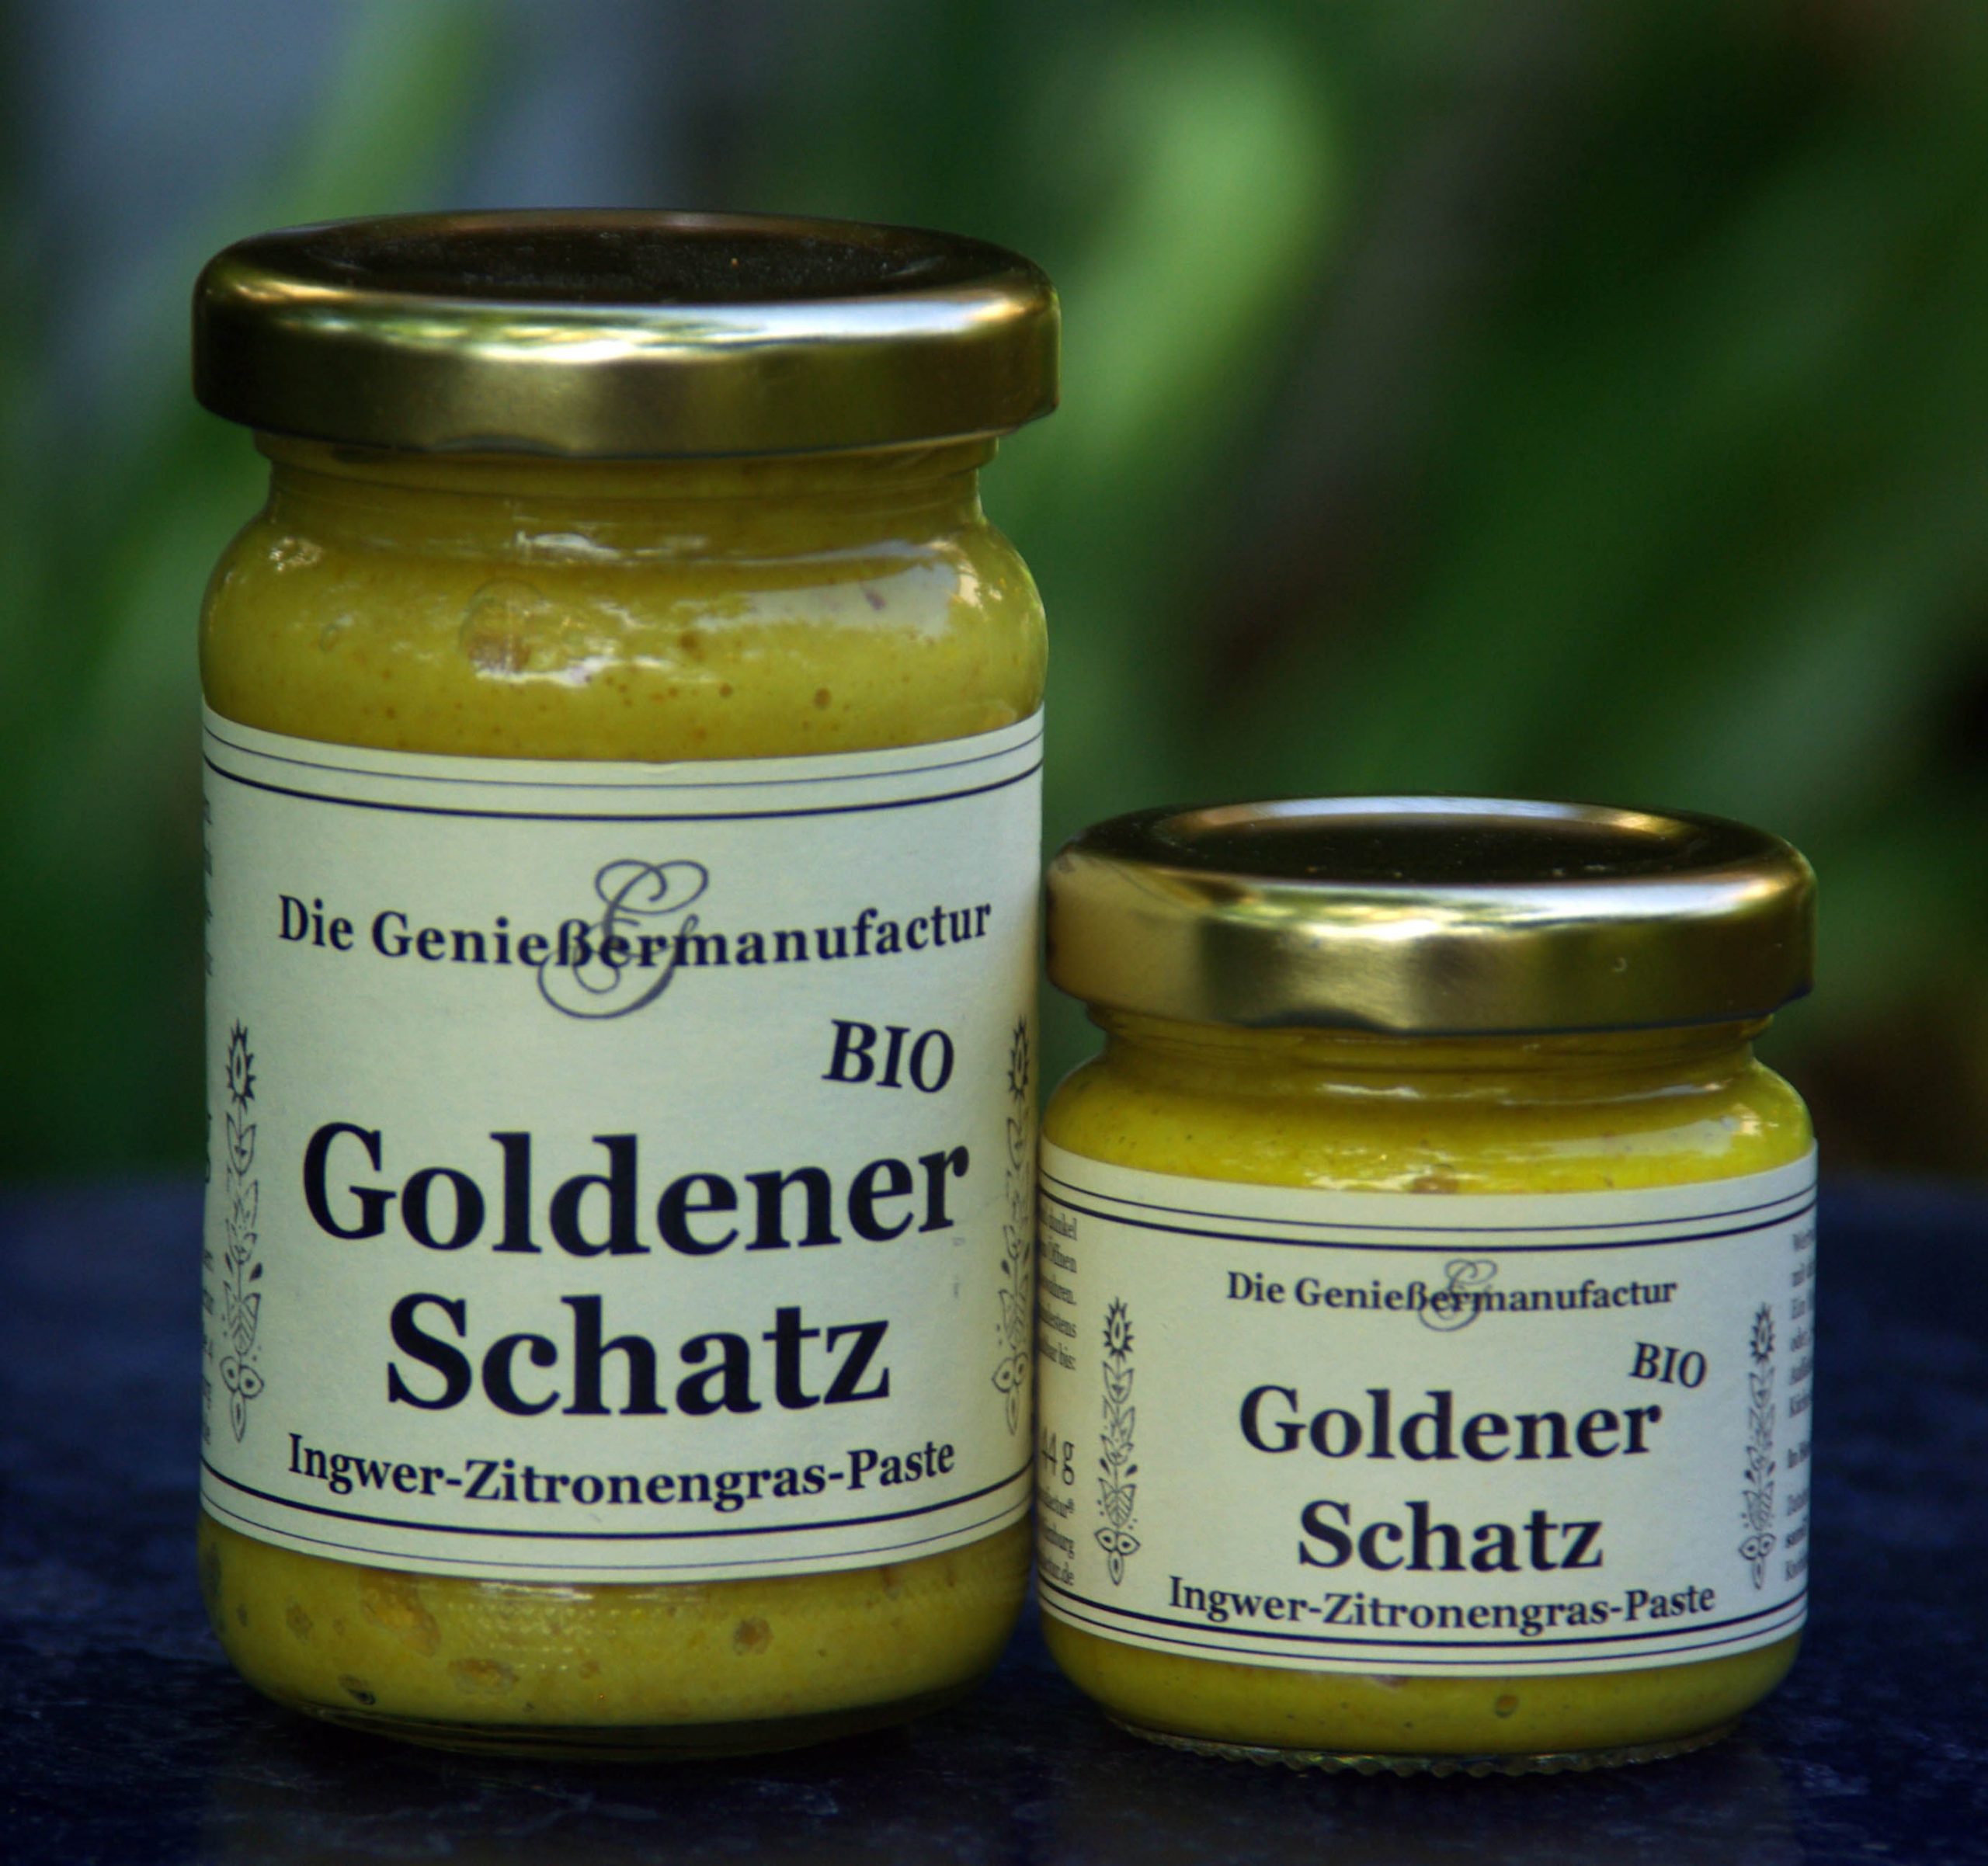 Goldener Schatz BIO Ingwer-Zitronengras-Paste Curry Handwerk